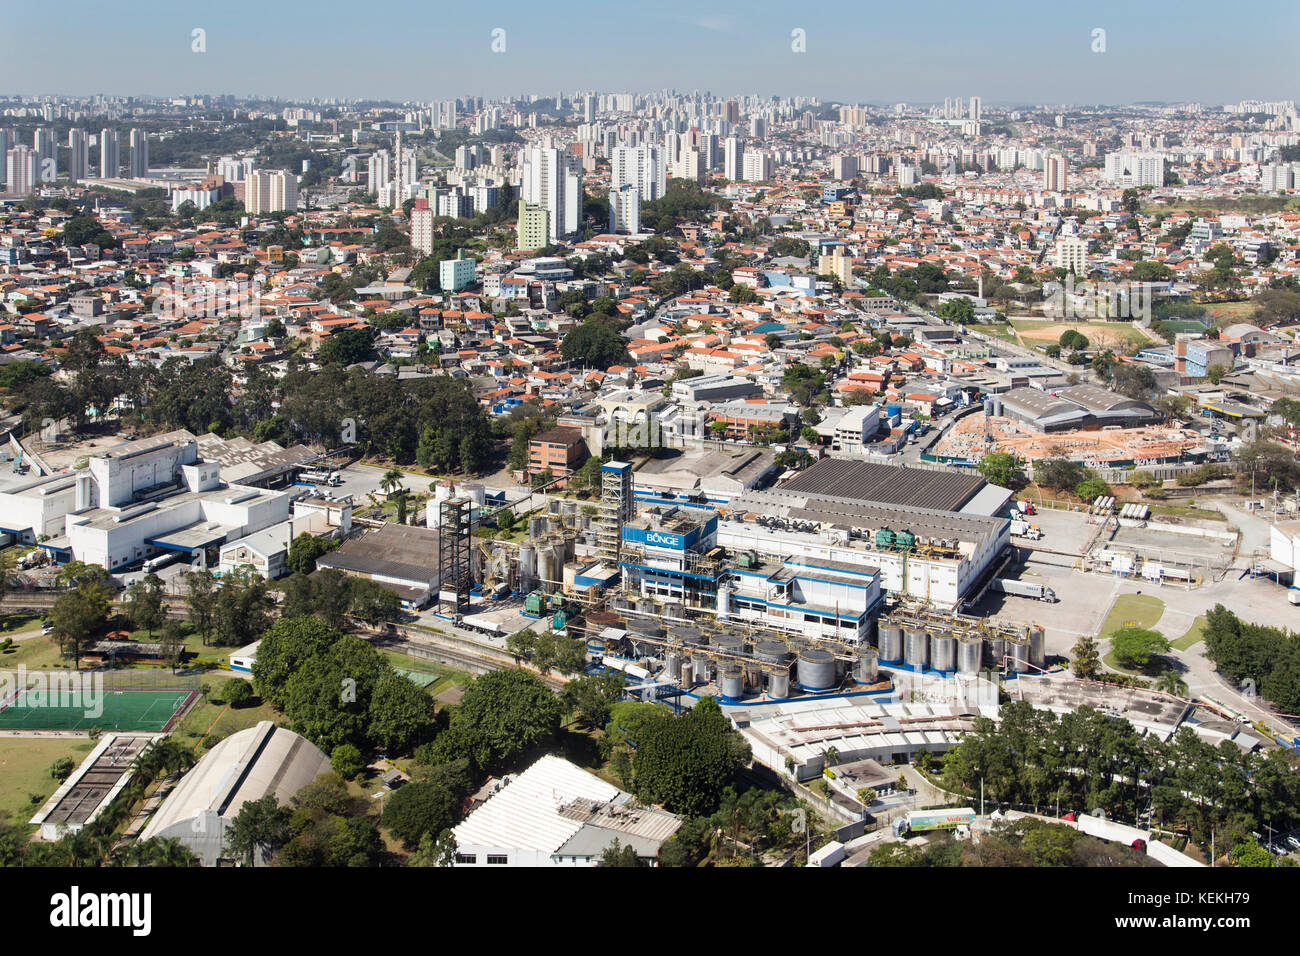 Vue aérienne de la région métropolitaine de Sao Paulo - Brésil Banque D'Images